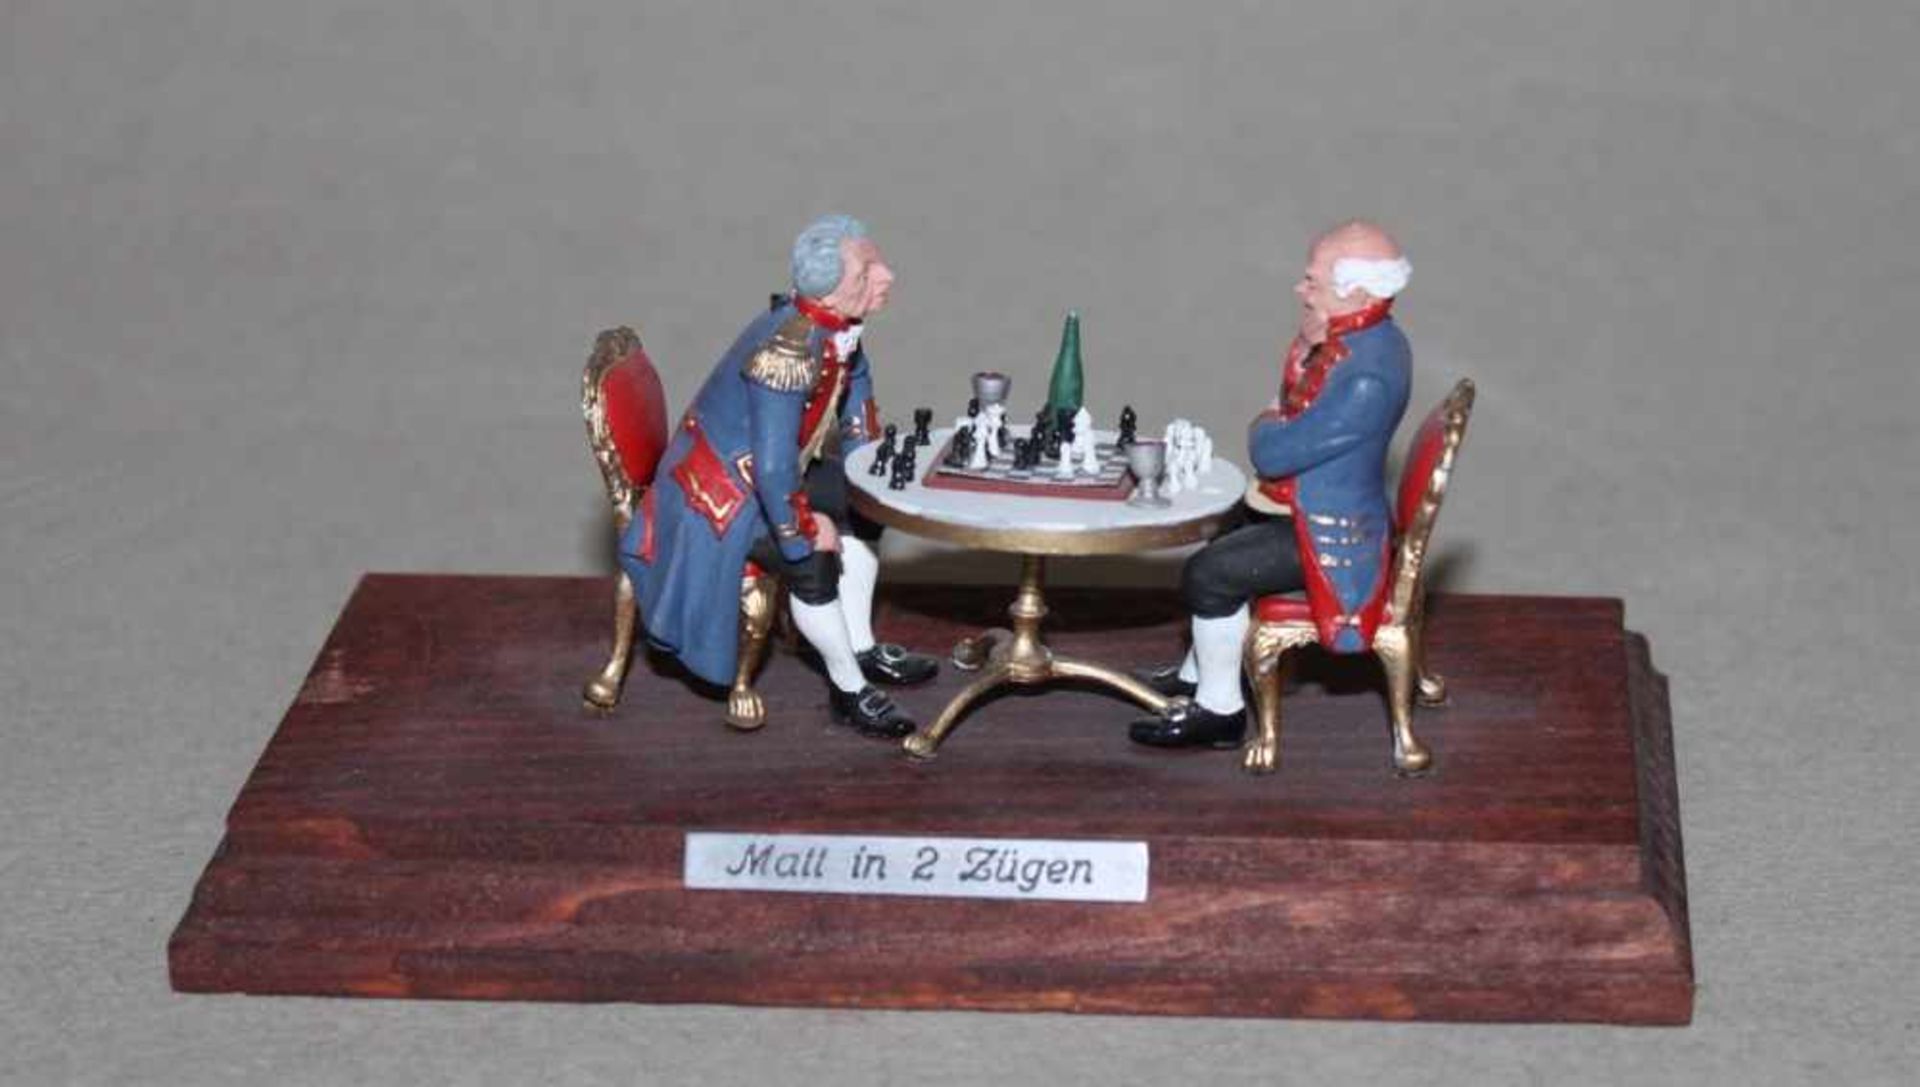 Europa. Deutschland. Zinnfiguren.Zwei Offiziere beim Schach "Matt in 2 Zügen". Zwei kleine bemalte